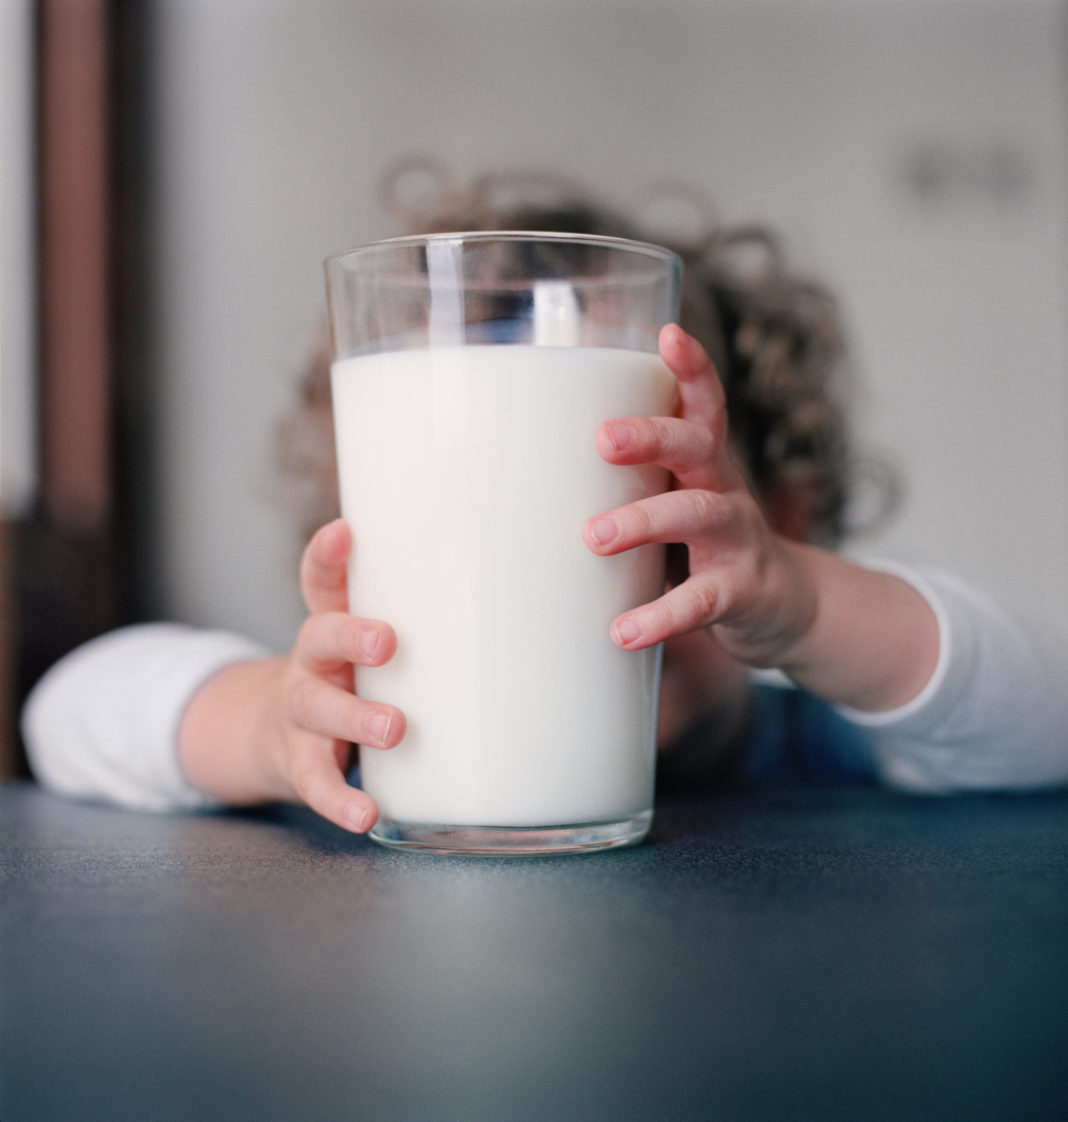 Ce spun experţii medicali despre laptele de vacă, recomandat pentru tratarea COVID-19